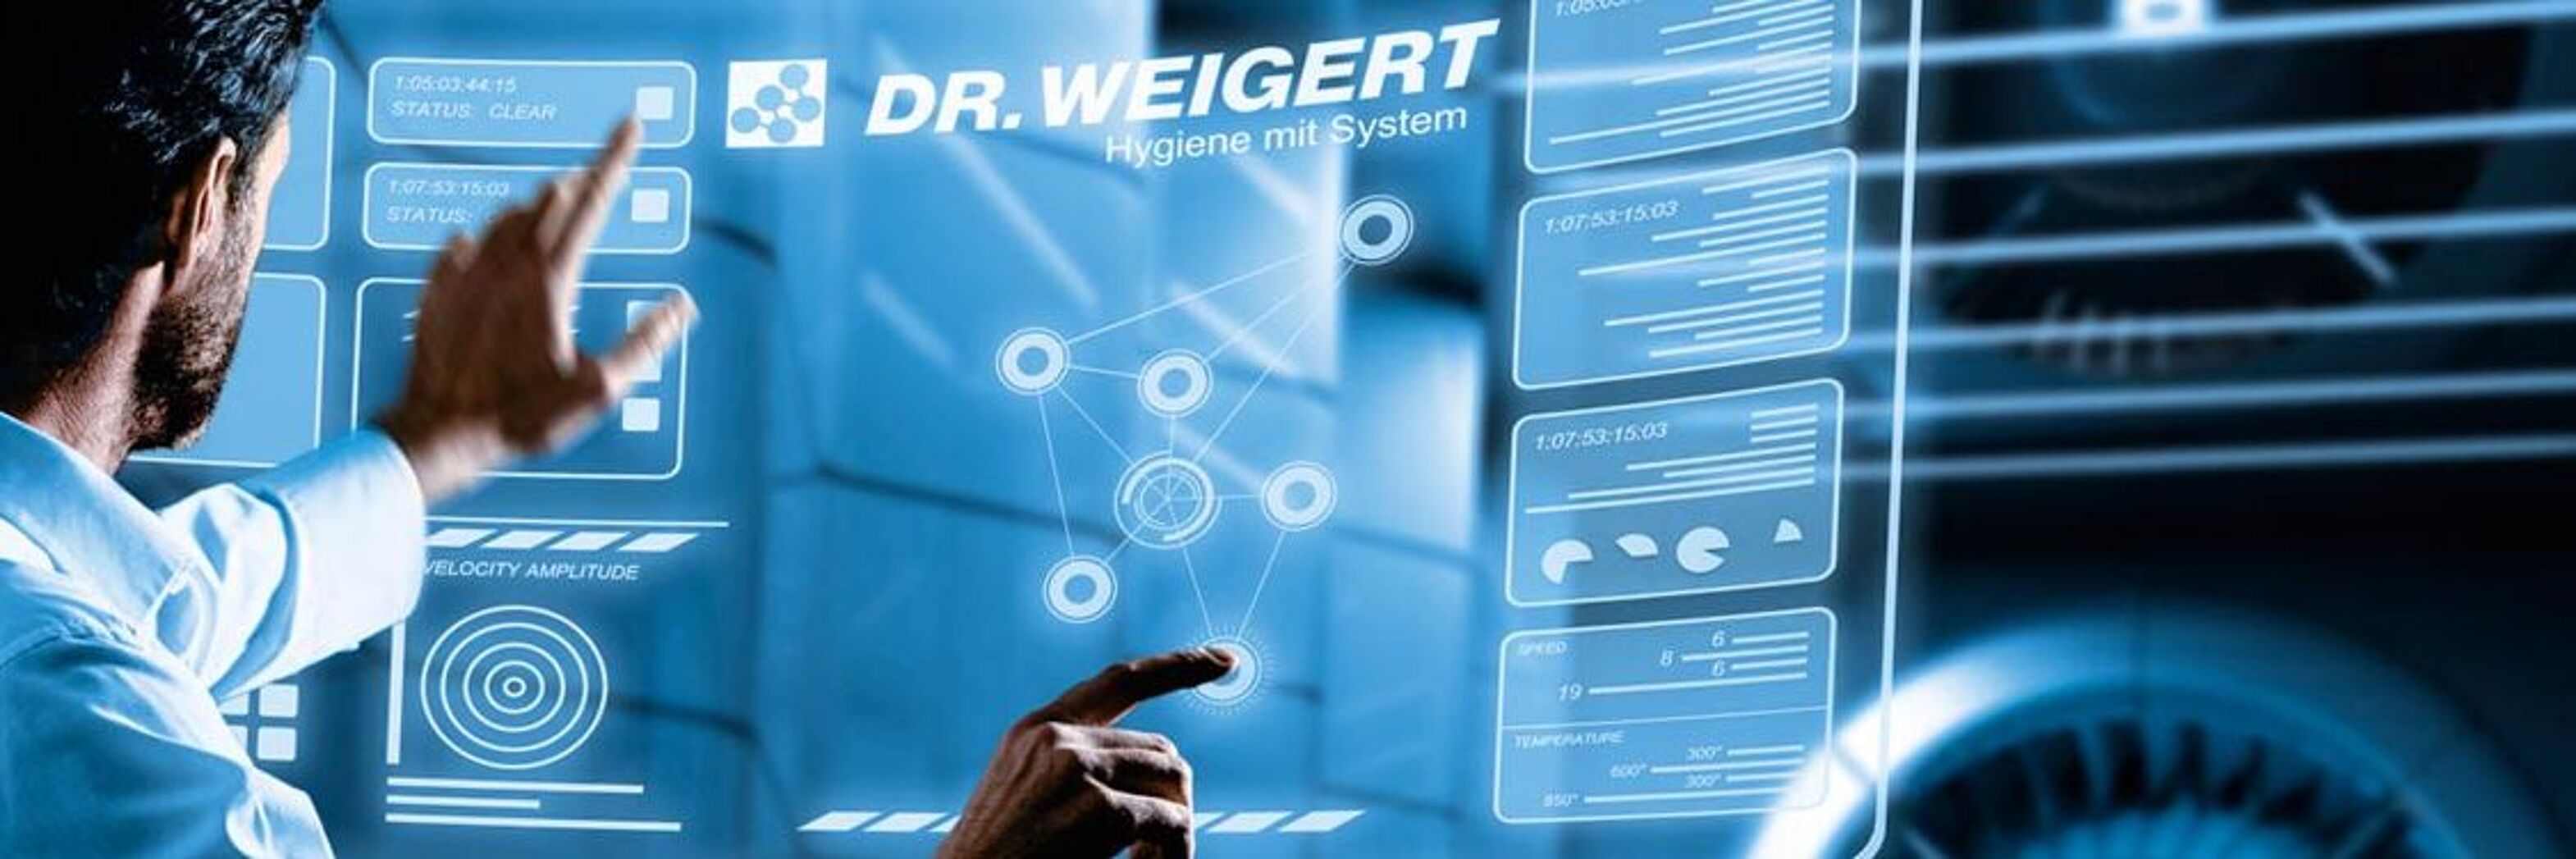 Dr. Weigert - Hygiene mit System